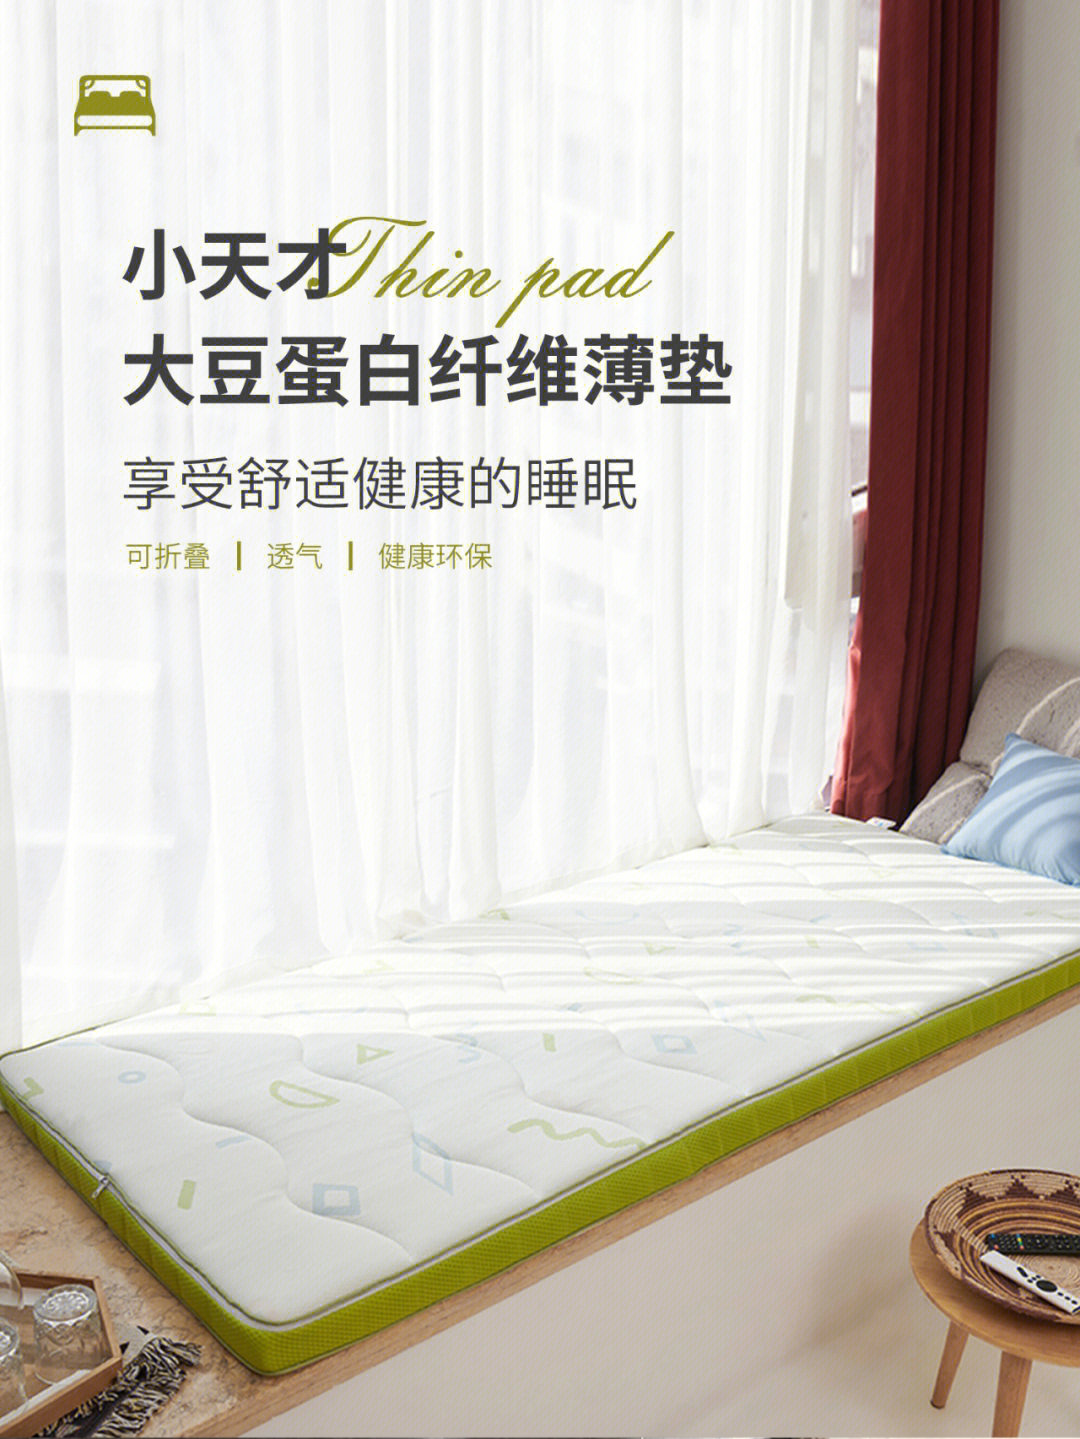 八益床垫广告图片